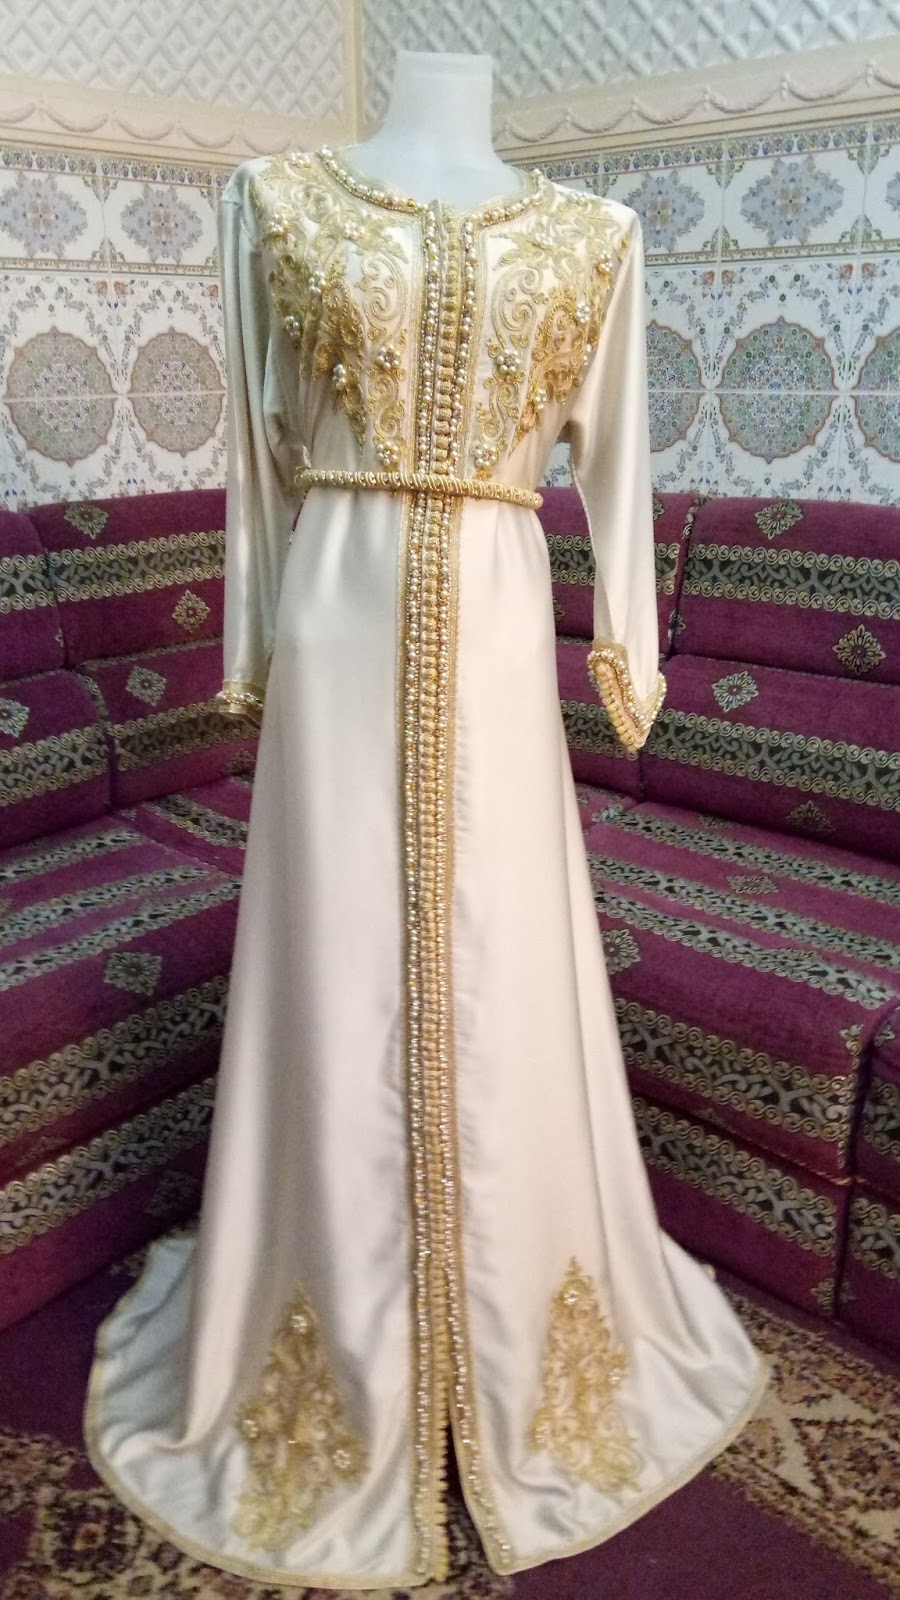 اجمل المغربية الملابس الموضه خياطة شاهد عصرية في مغربية